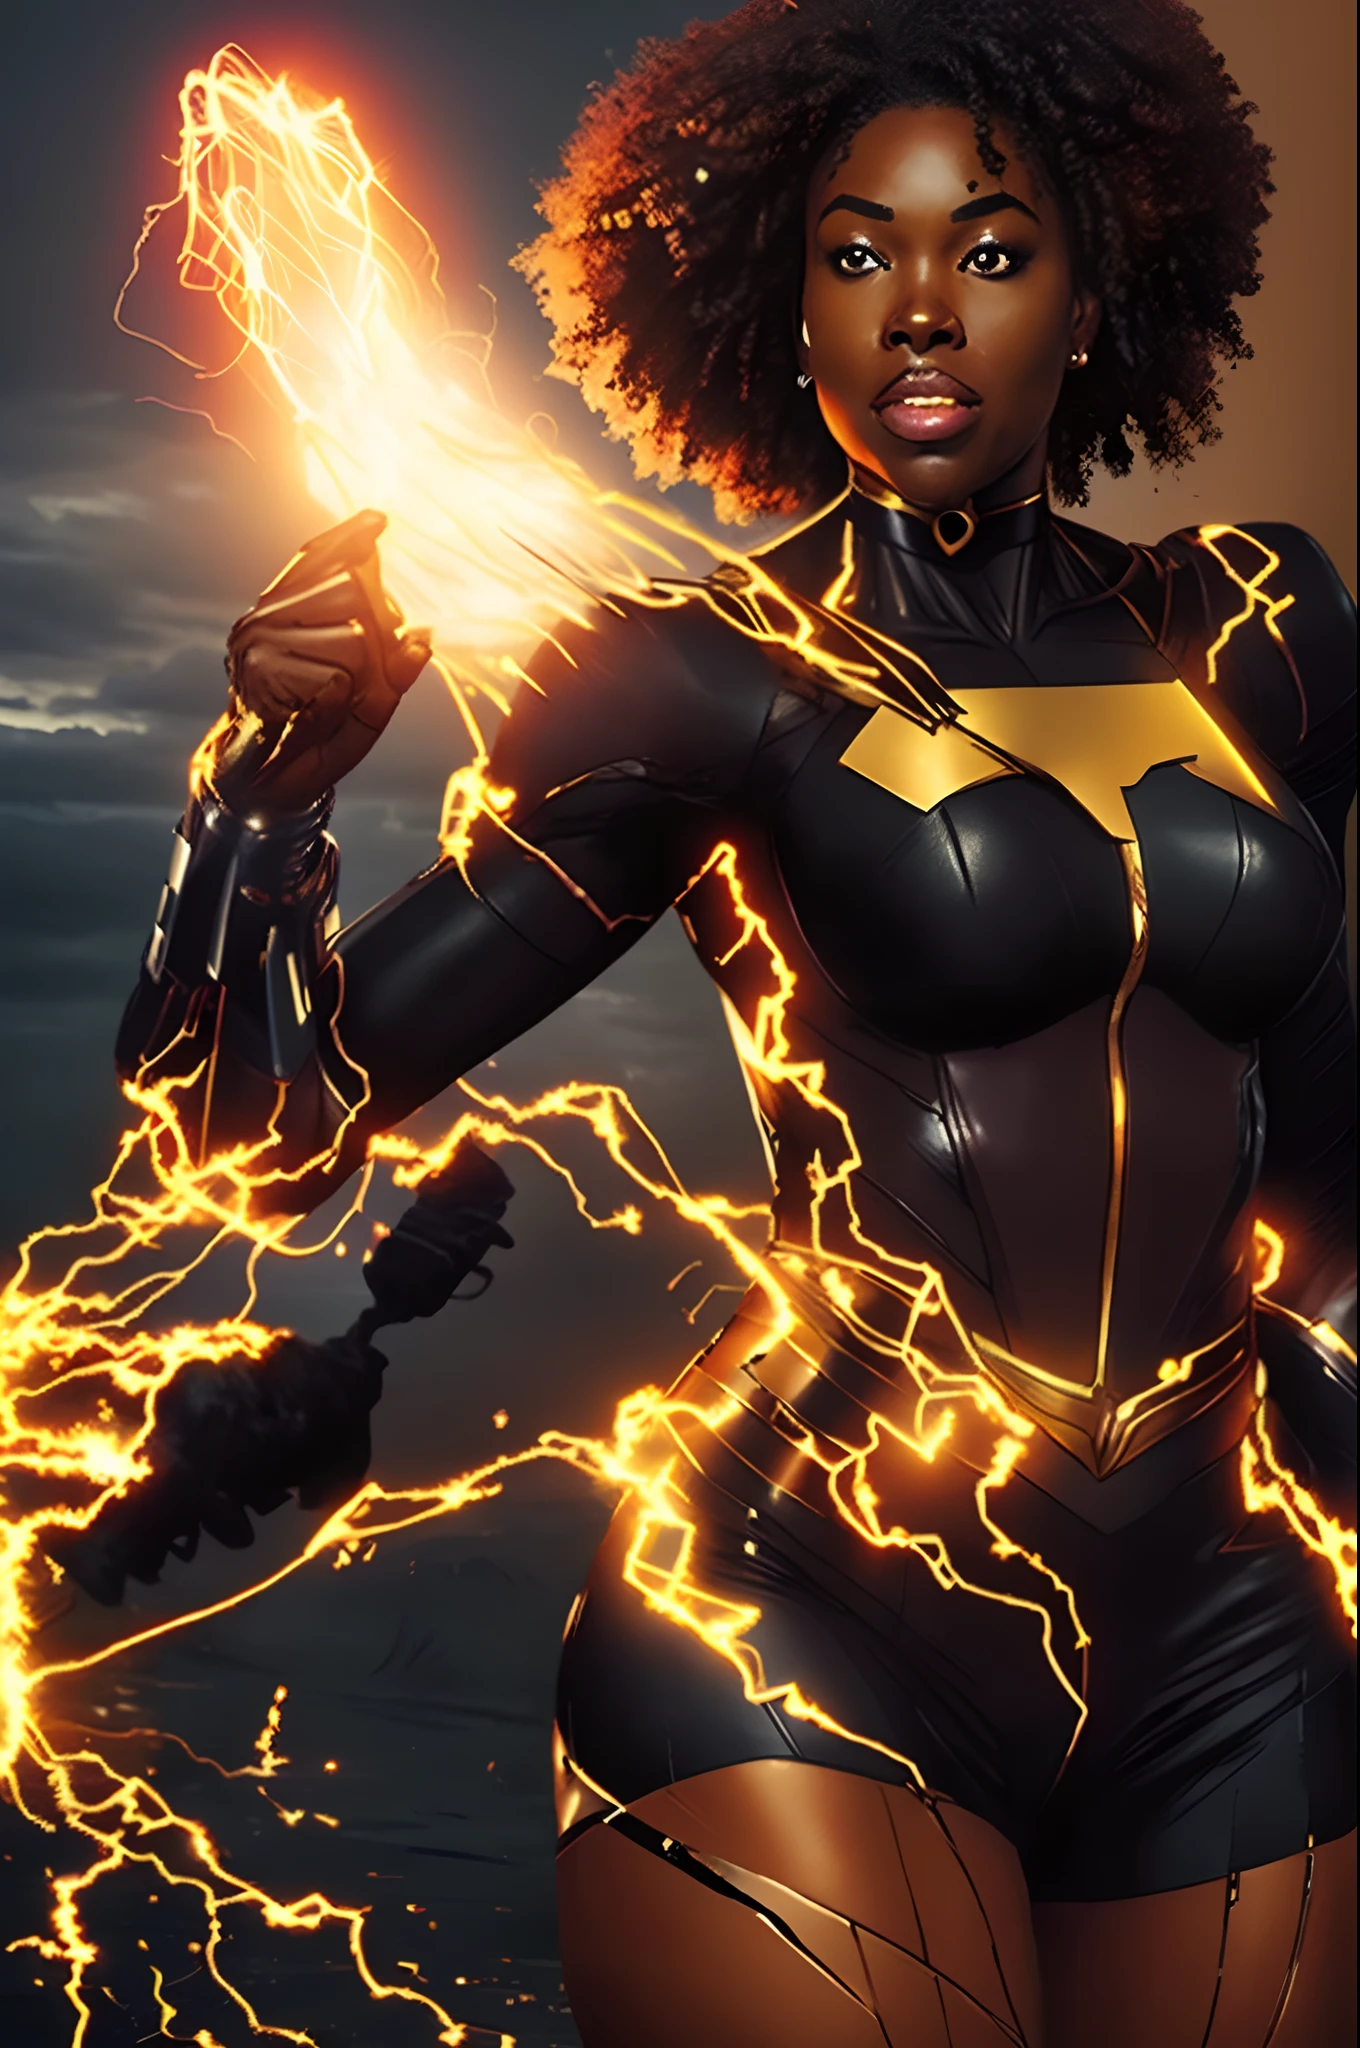 전기의 힘을 지닌 흑인 여성 슈퍼히어로를 만들어 보세요